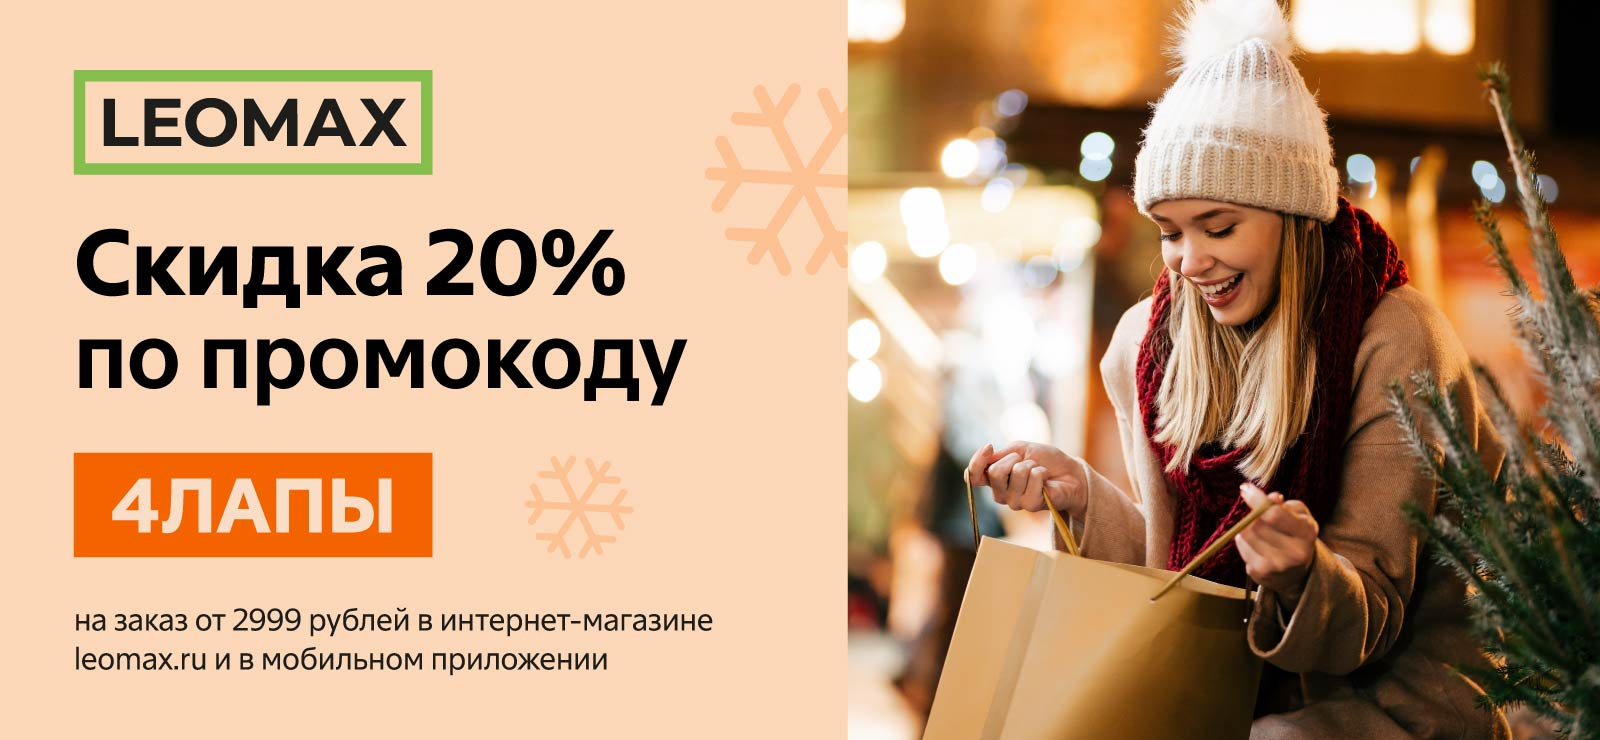 Cкидка 20% по промокоду 4ЛАПЫ в интернет-магазине leomax.ru